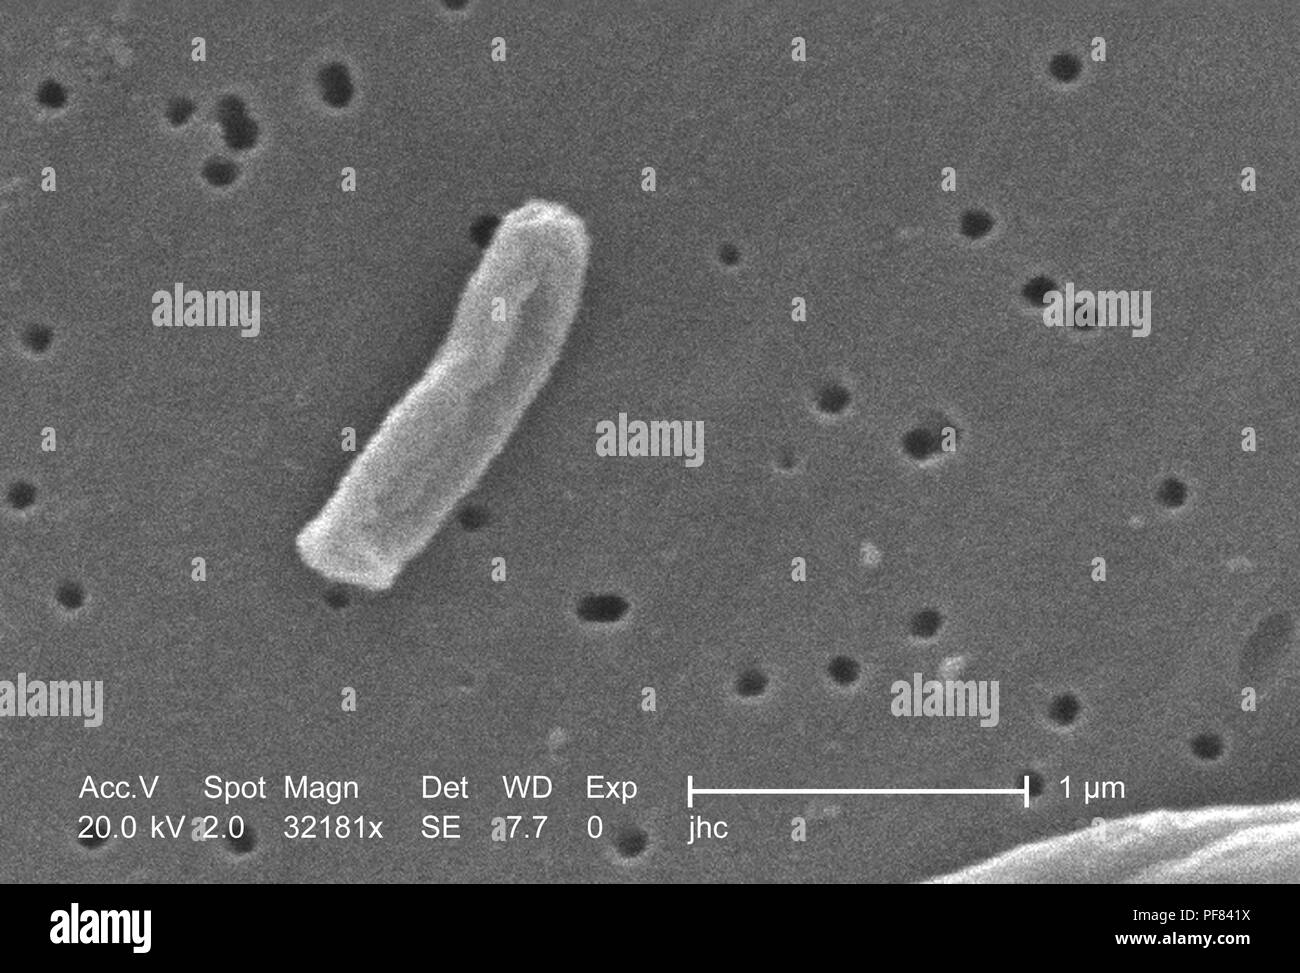 Dettagli ultrastrutturali di Gram-positivi di Mycobacterium tuberculosis batteri hanno rivelato nel 32181x scansione ingrandita al microscopio elettronico (SEM) immagine, 2006. Immagine cortesia di centri per il controllo delle malattie (CDC) / Ray Butler, MS, Janice Haney Carr. () Foto Stock